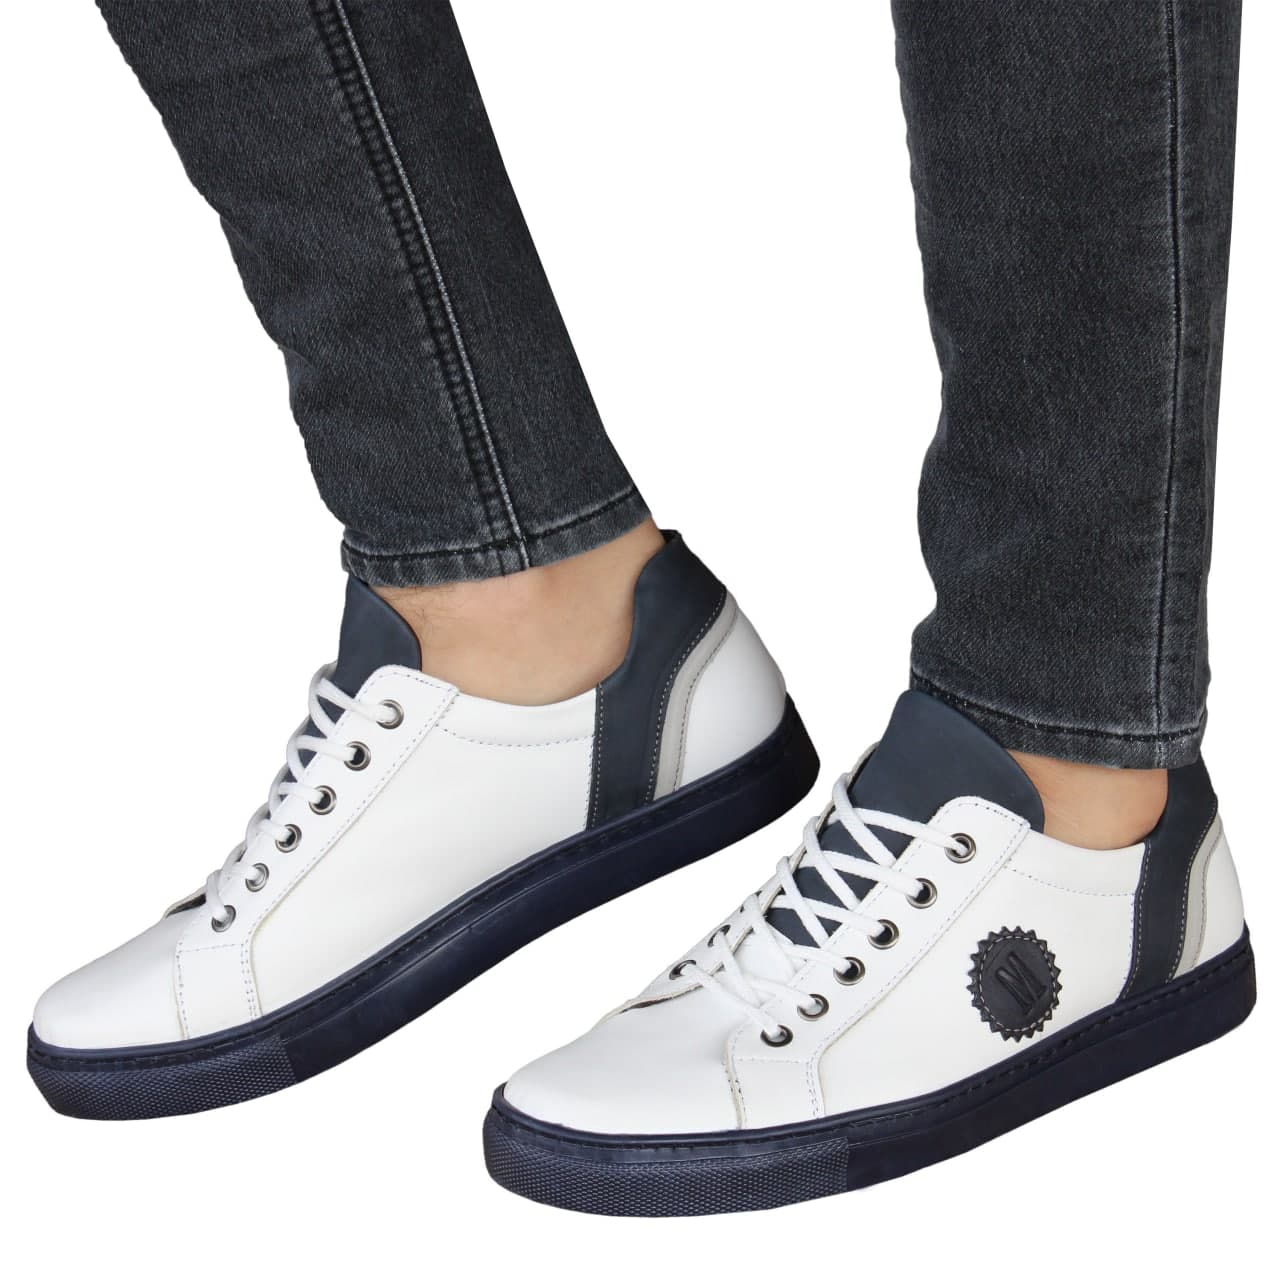 Marmara Mode - Détail du produit chaussure homme